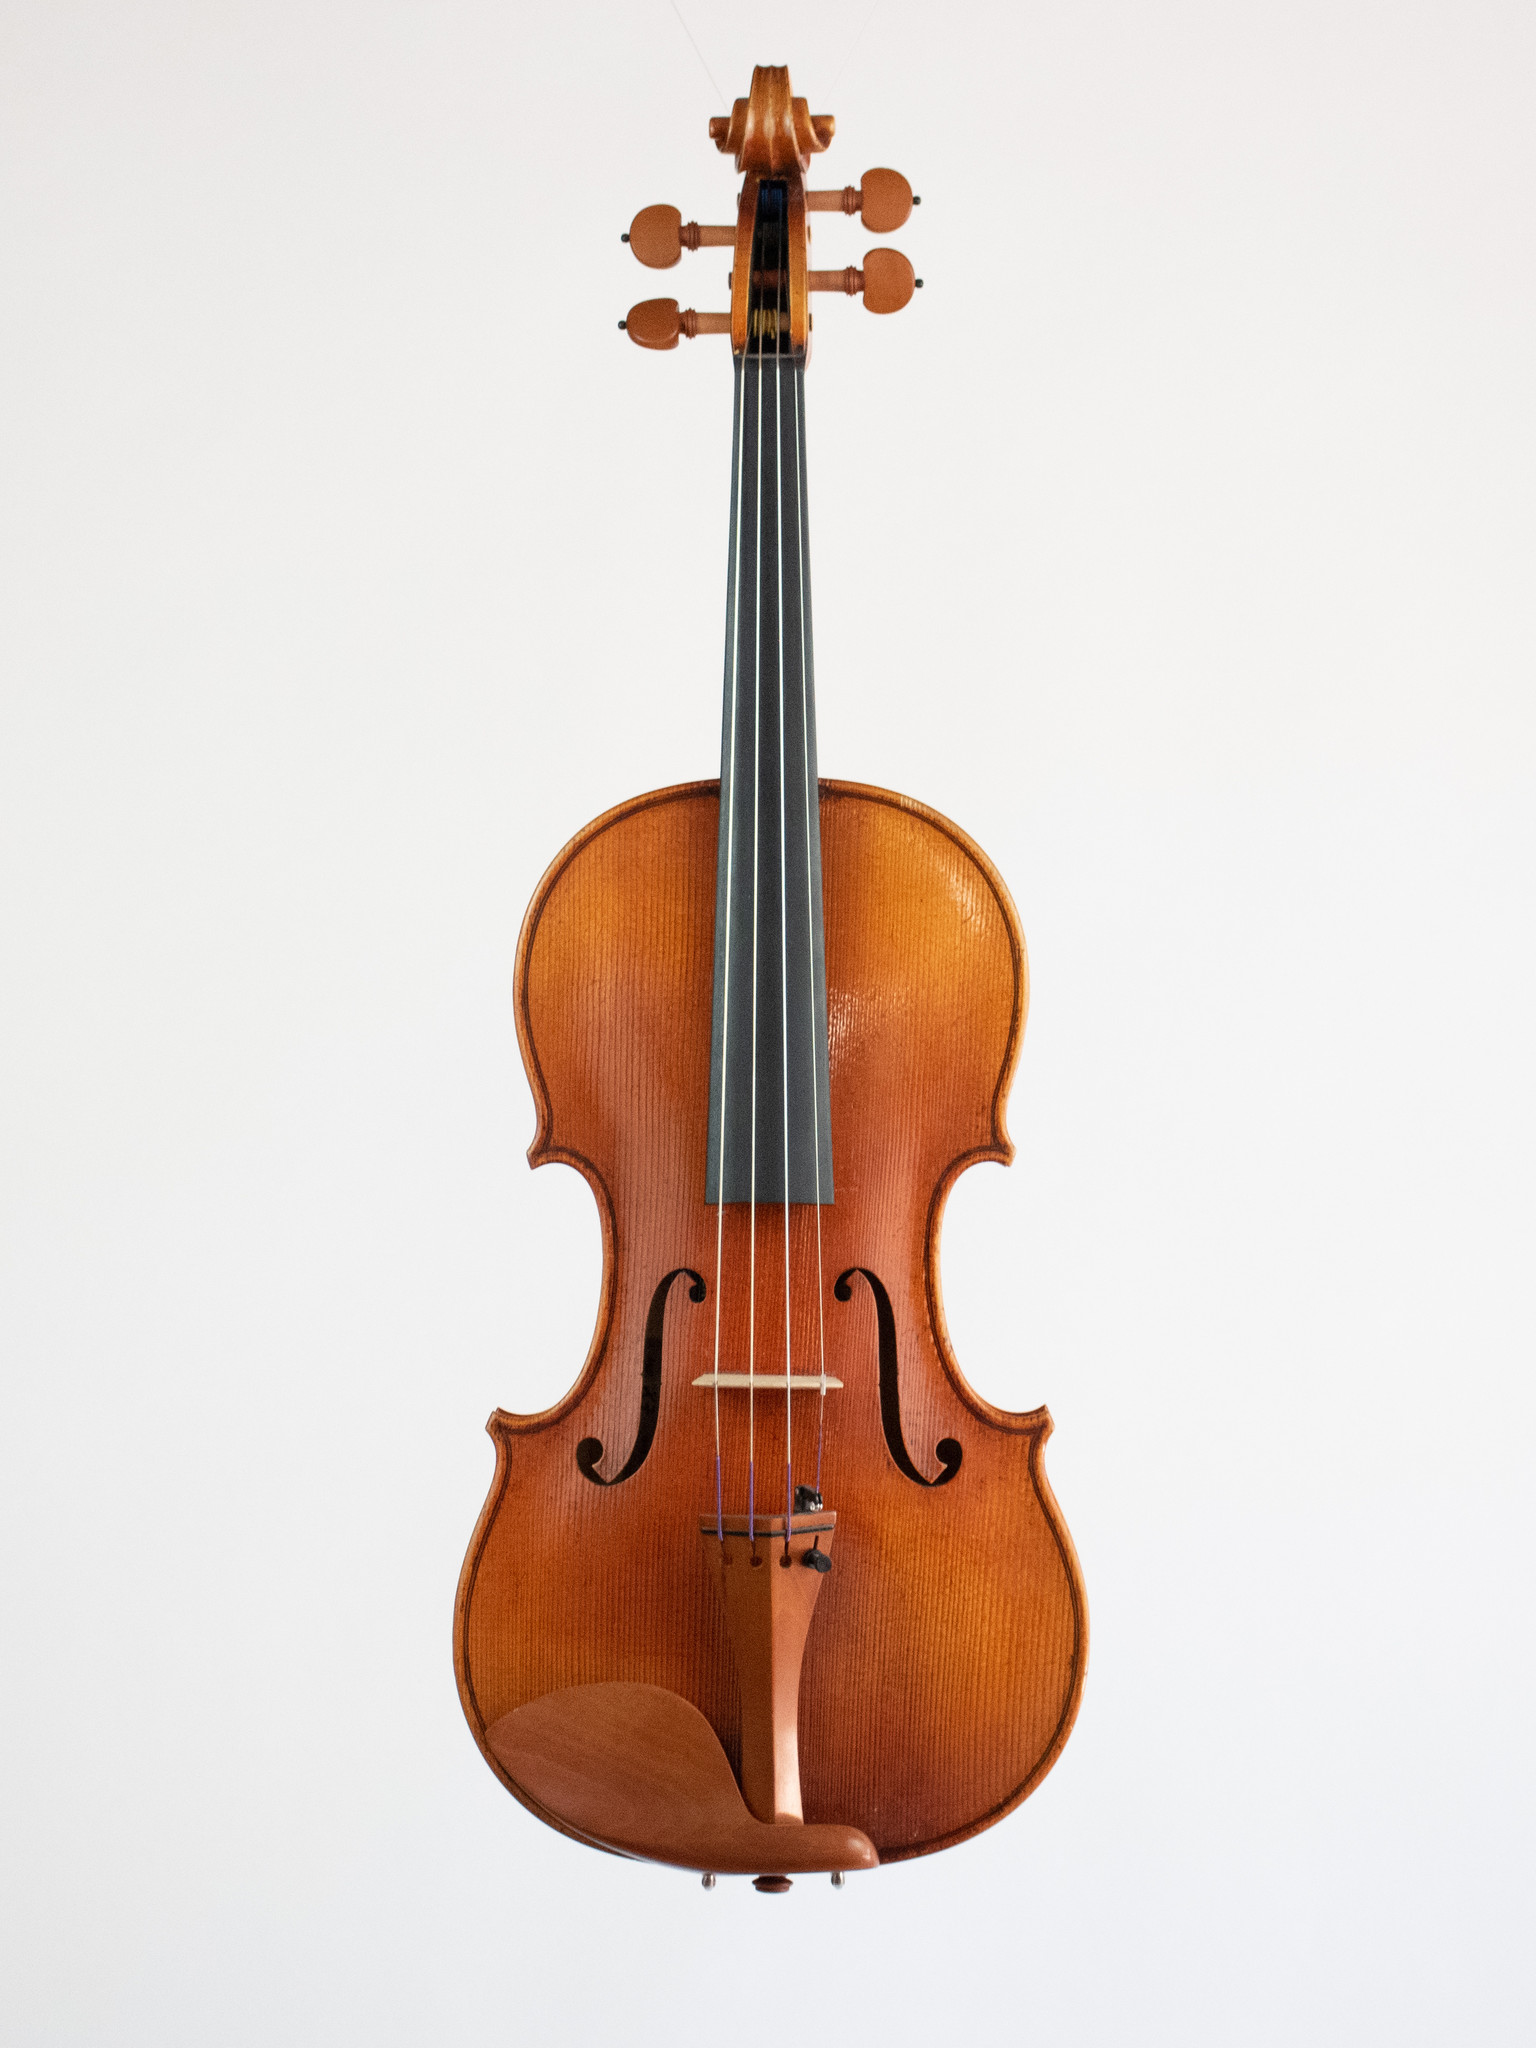 Музыку великолепная скрипки. Strunal 337w-4/4. Cremona 331w скрипка 4/4. Скрипка модель. Мастер скрипок Wood.